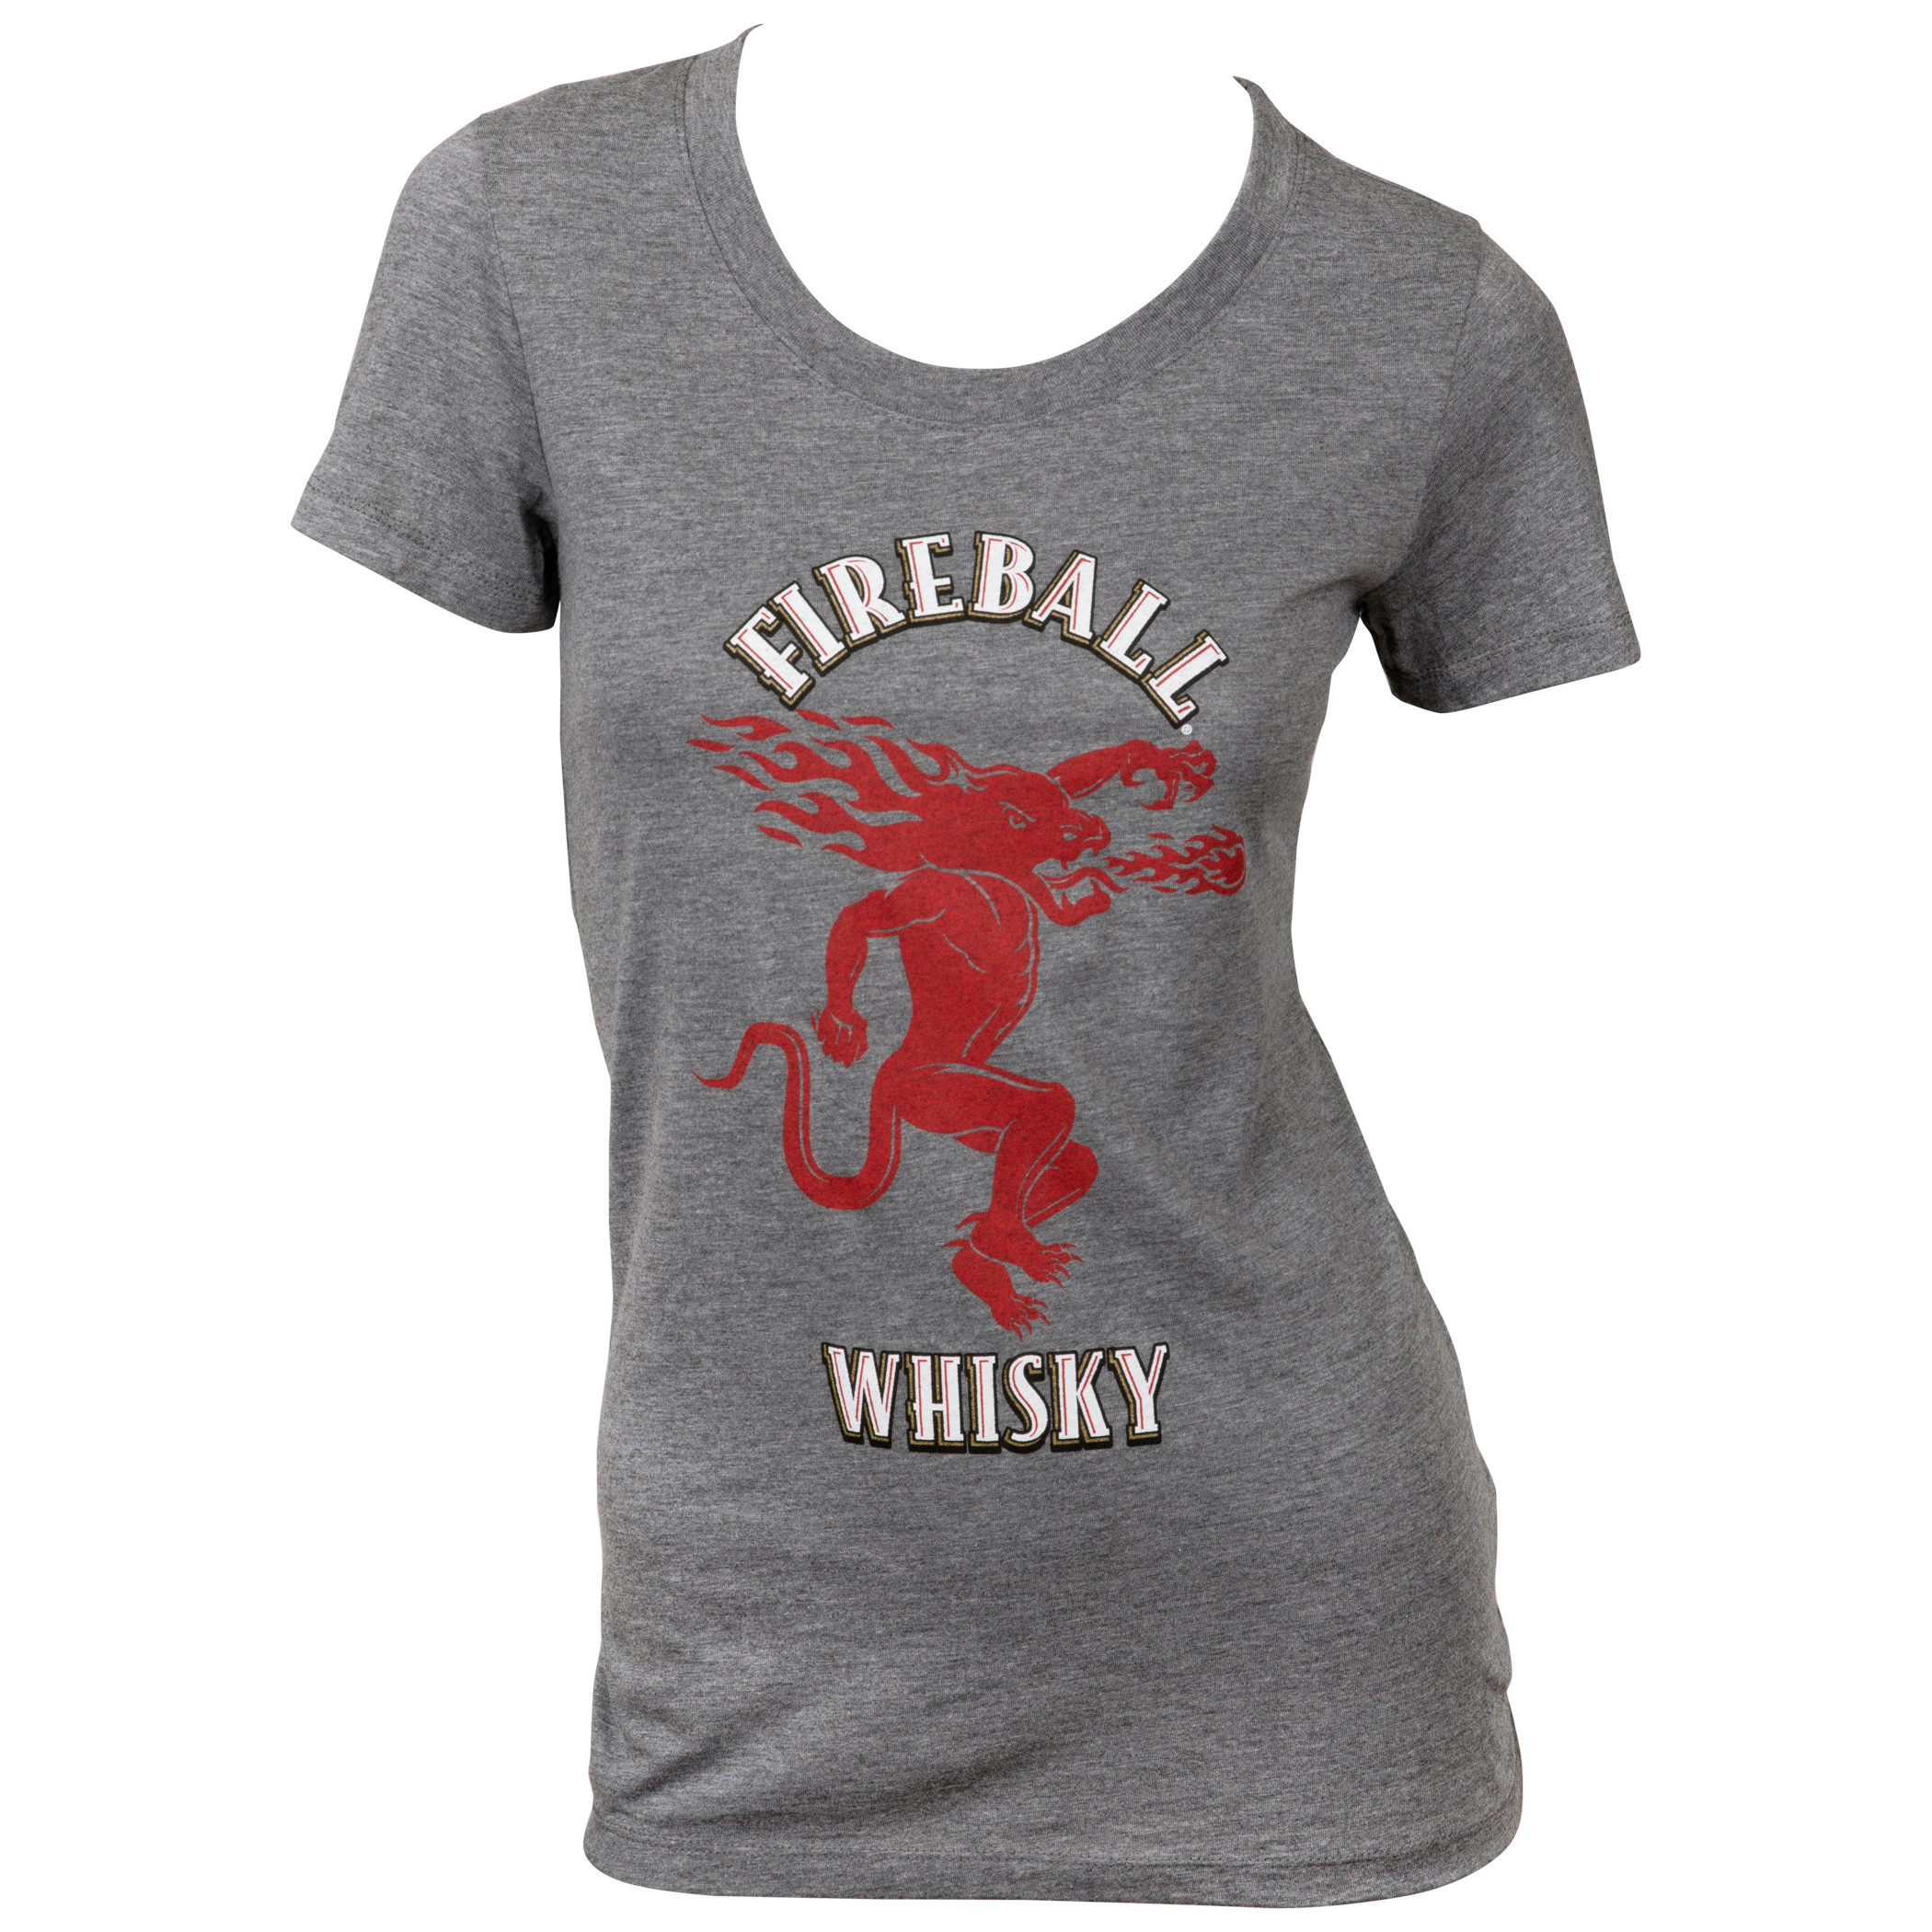 Fireball Whisky Women's Super Soft T-Shirt